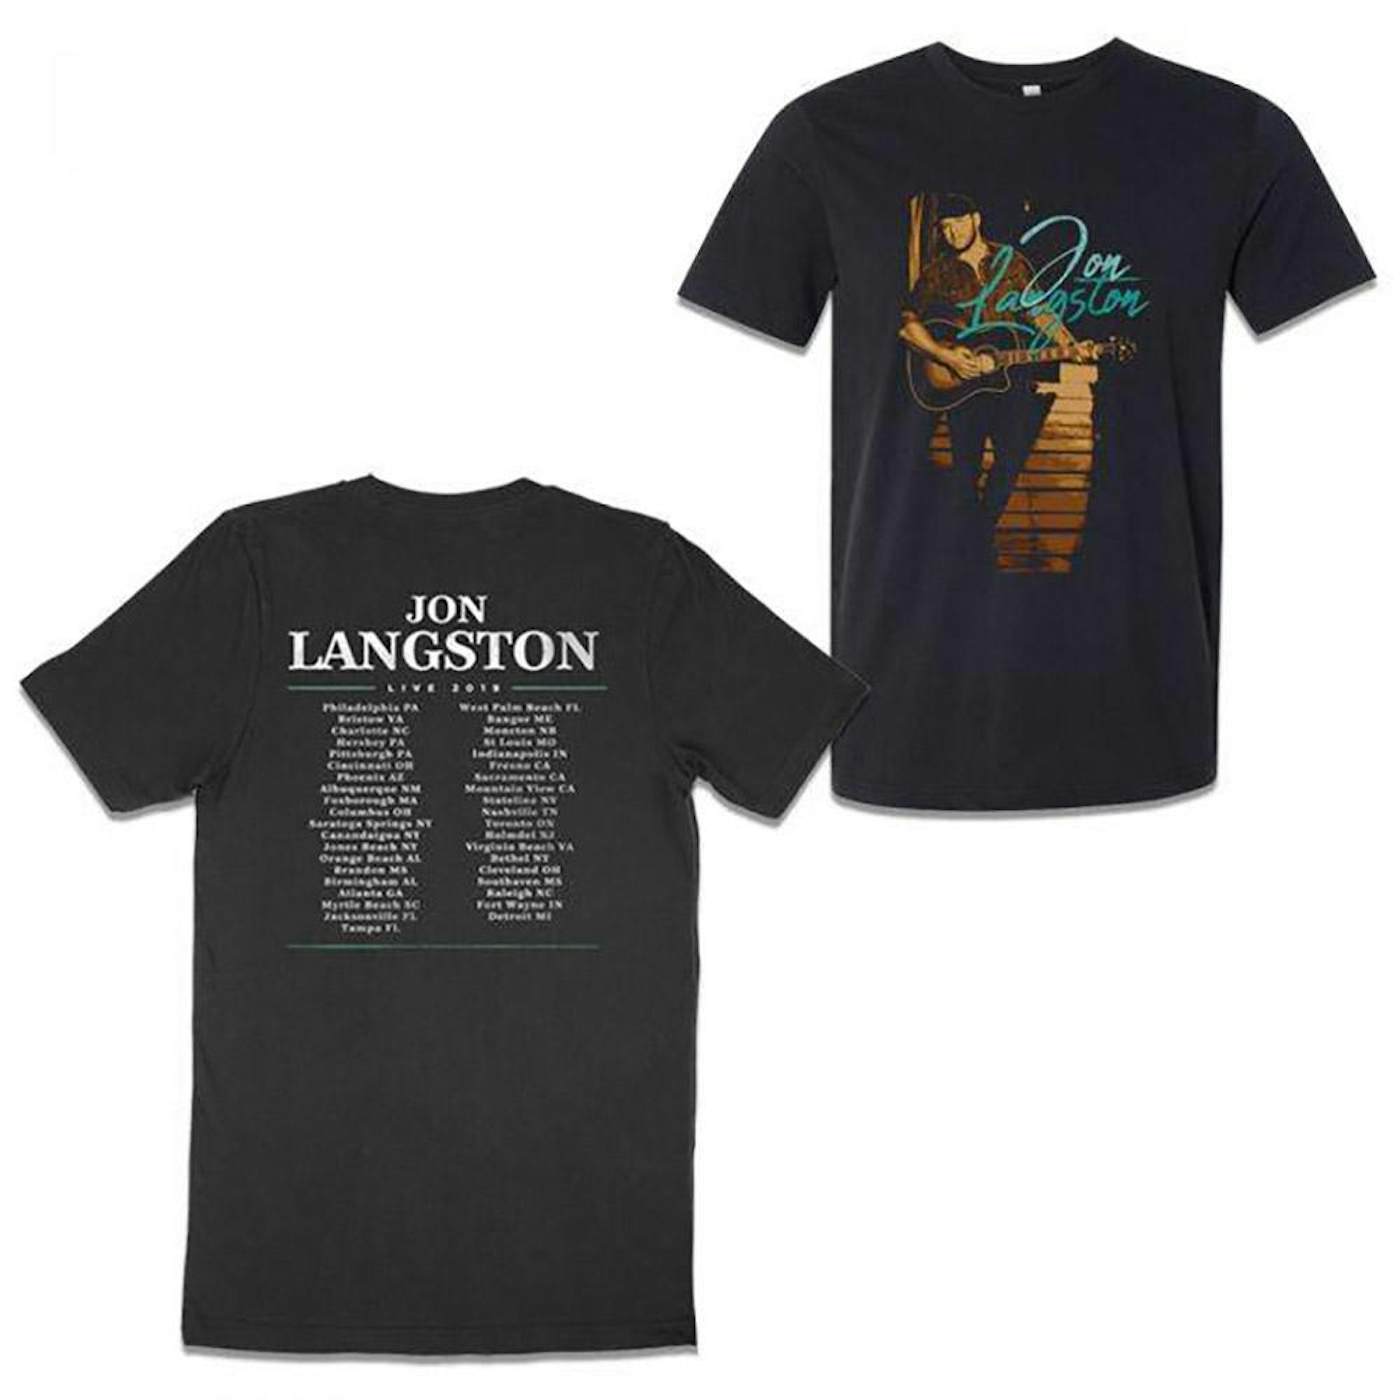 Jon Langston 2019 Summer Tour Tee